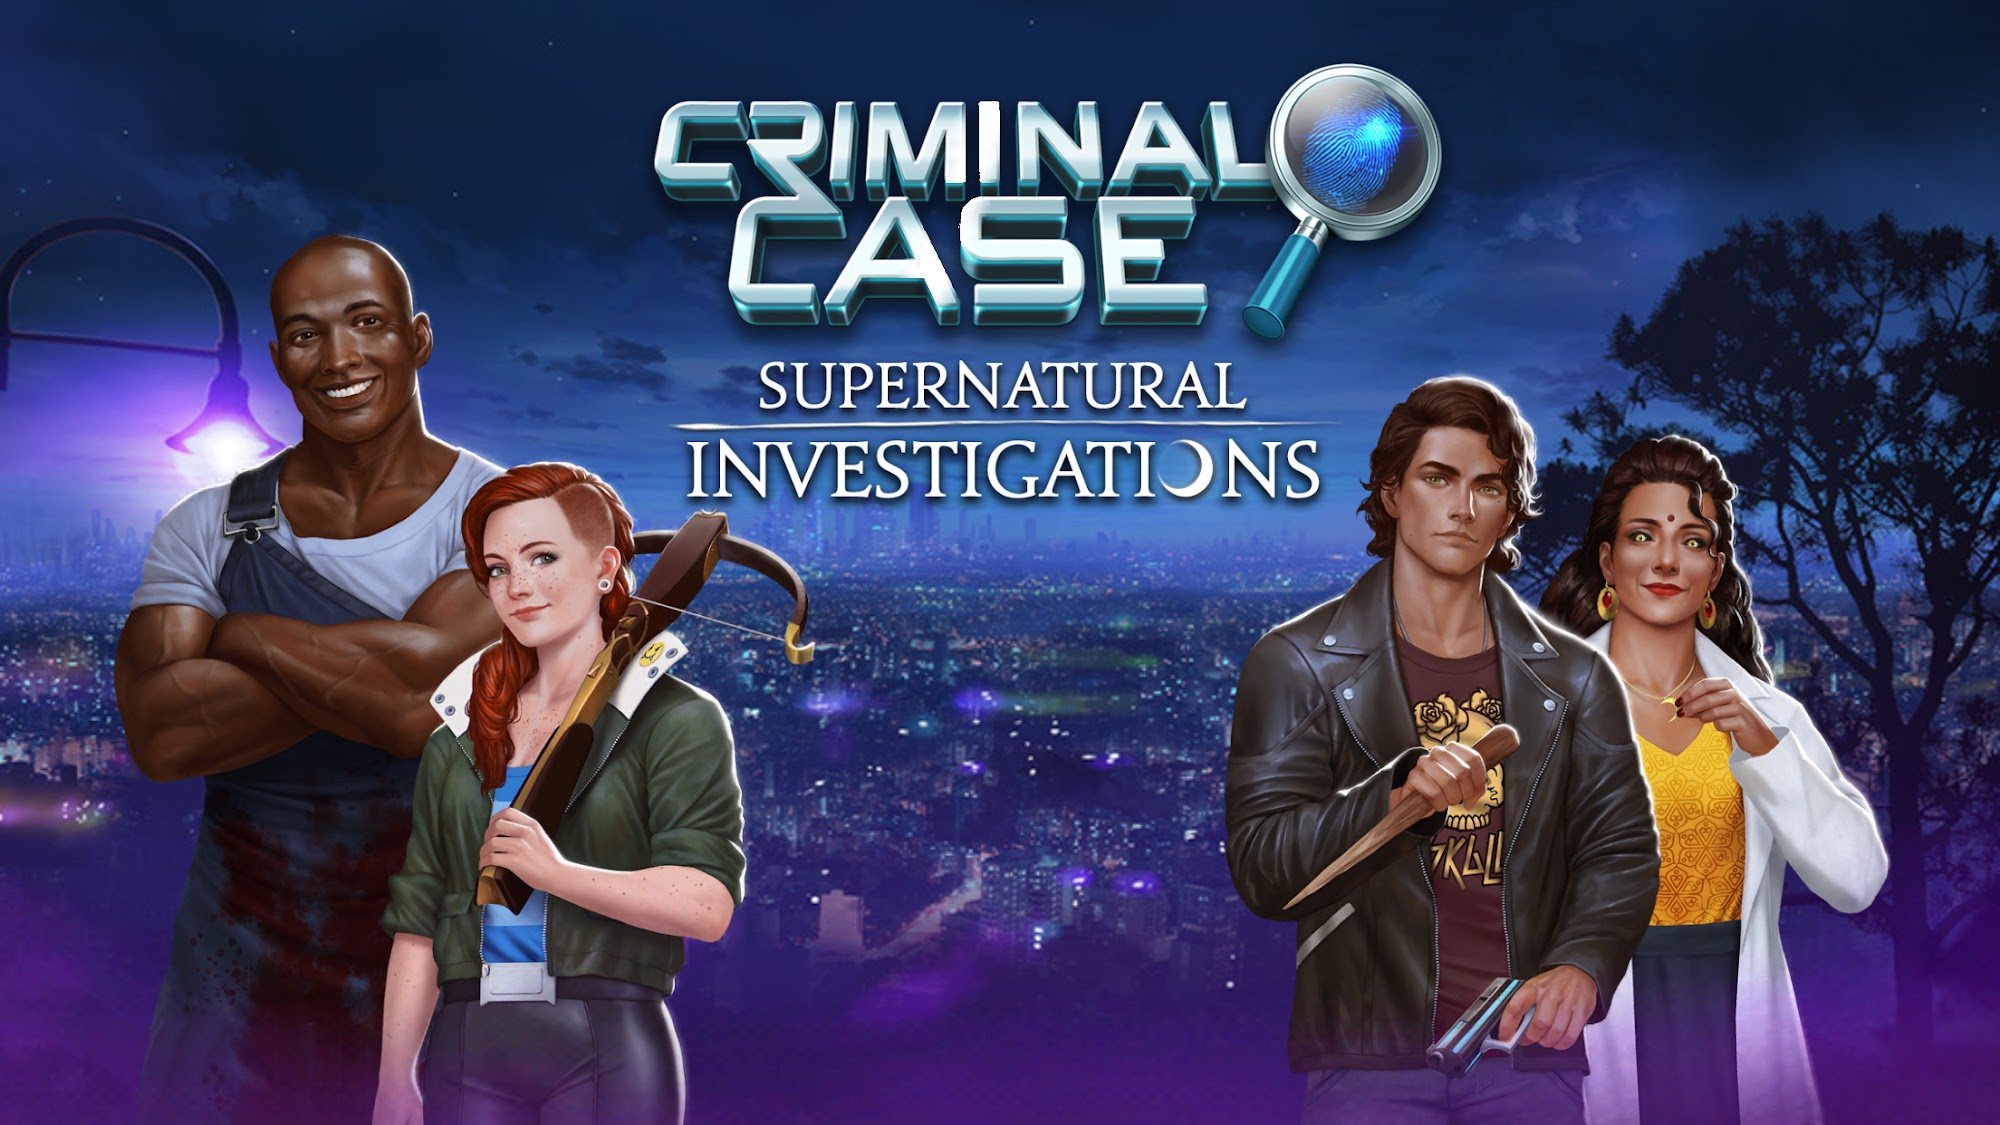 Criminal Case: Supernatural Investigations